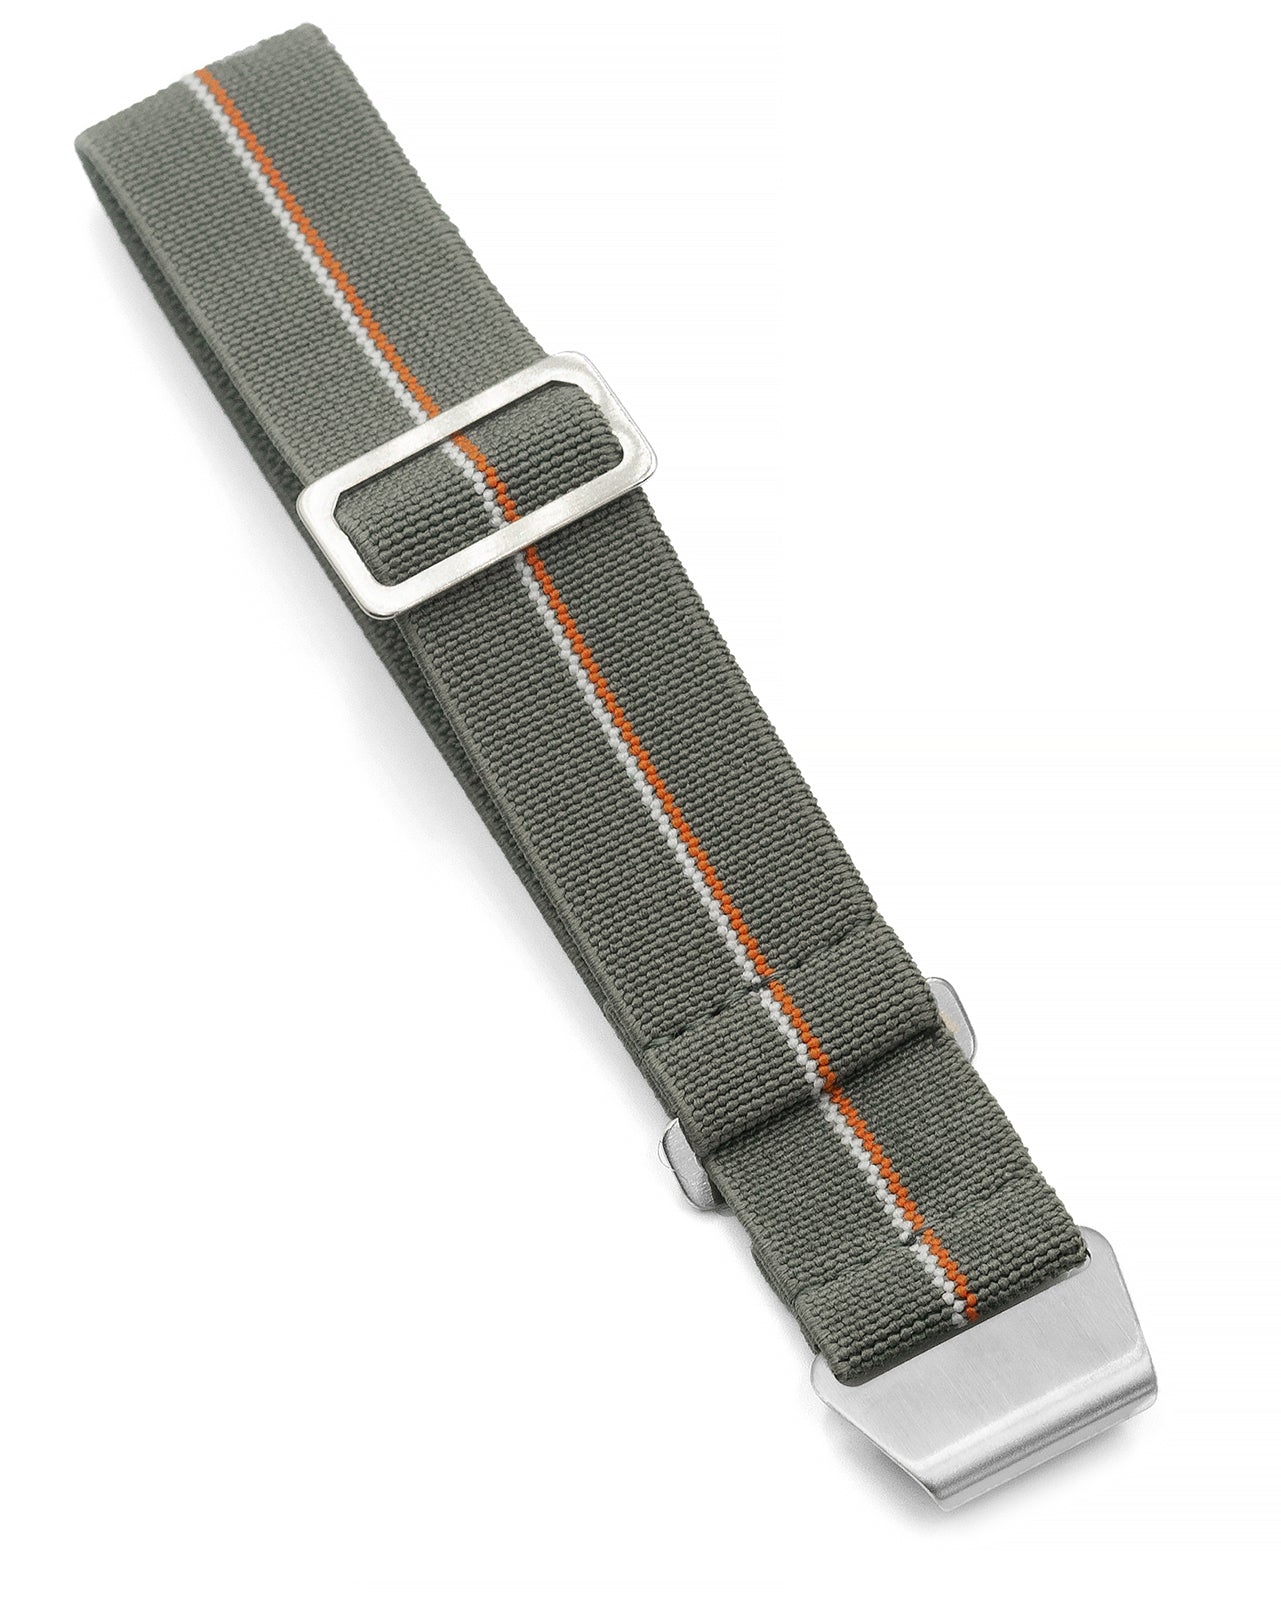 PARA Elastic - Sage Grey with Orange + White Stripes